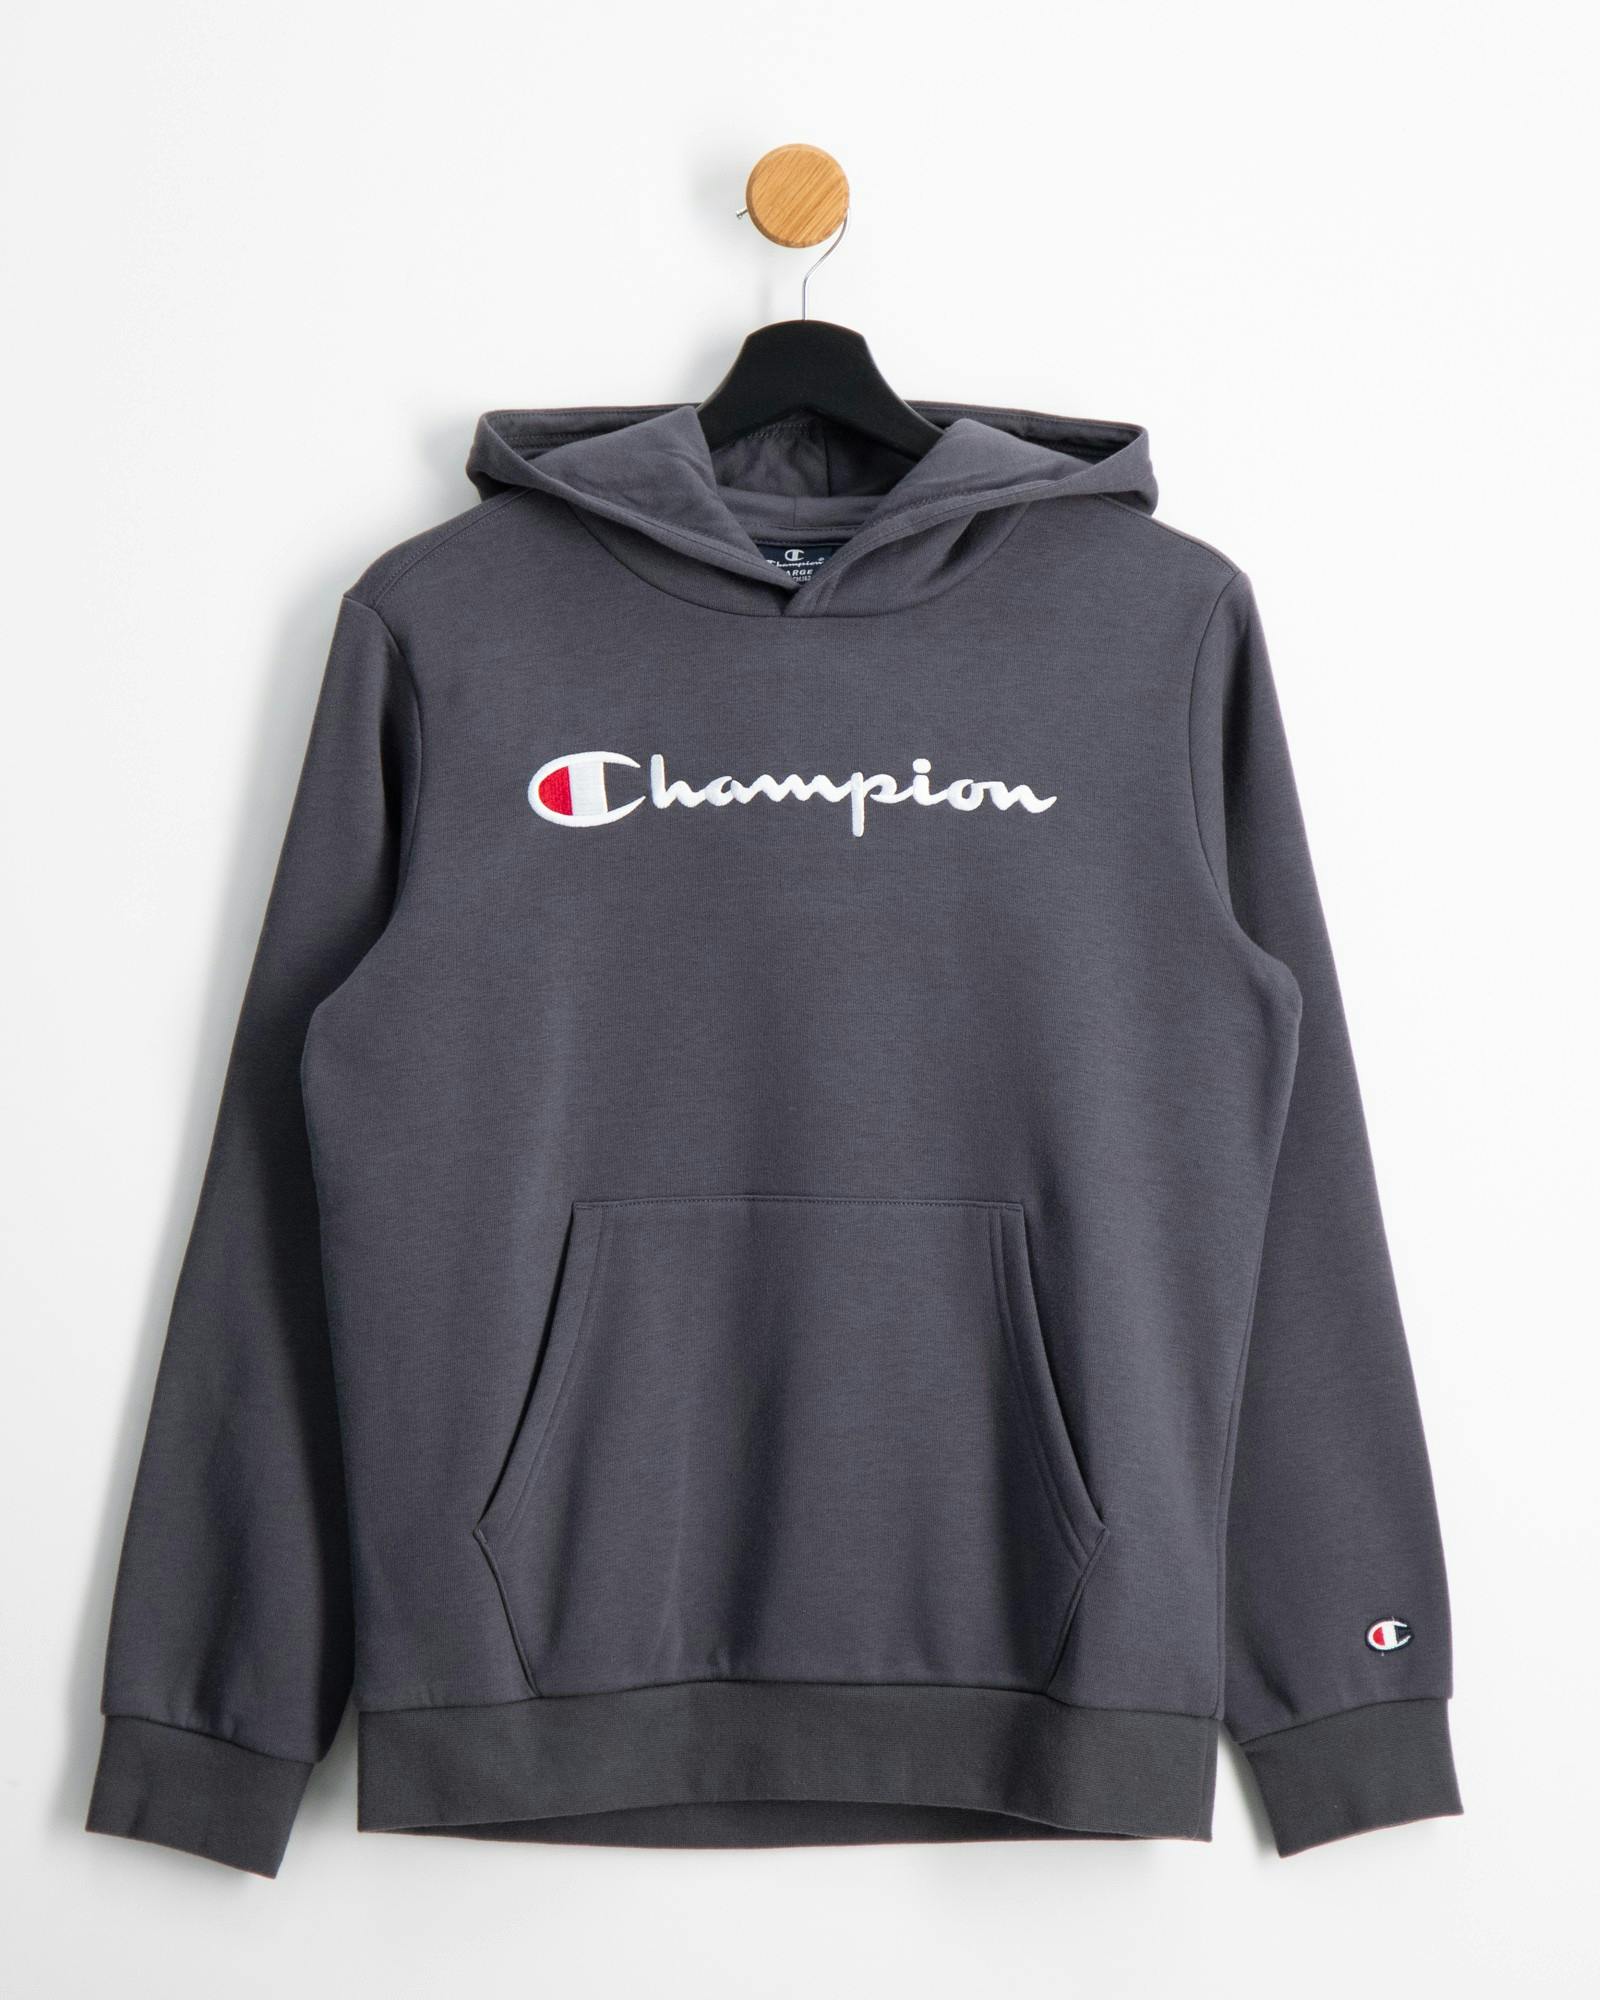 Champion für Kinder und Jugendliche | Kids Brand Store | Sweatshirts